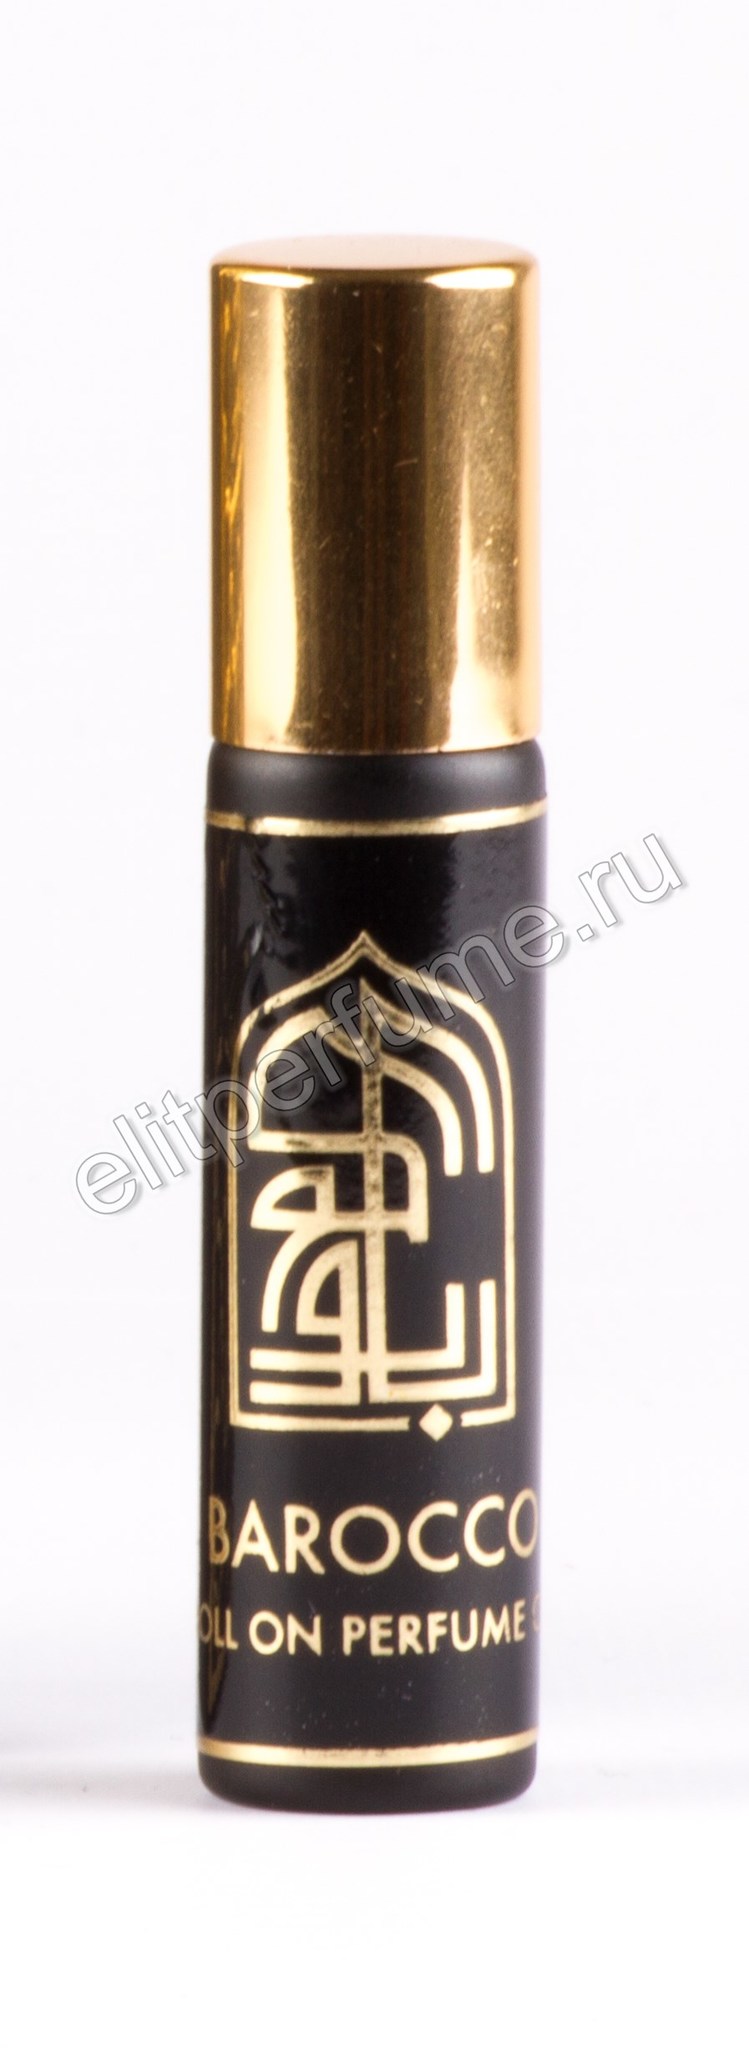 Барокко  Barocco 7 мл арабские масляные духи от Арабеск Парфюм Arabesque Perfumes